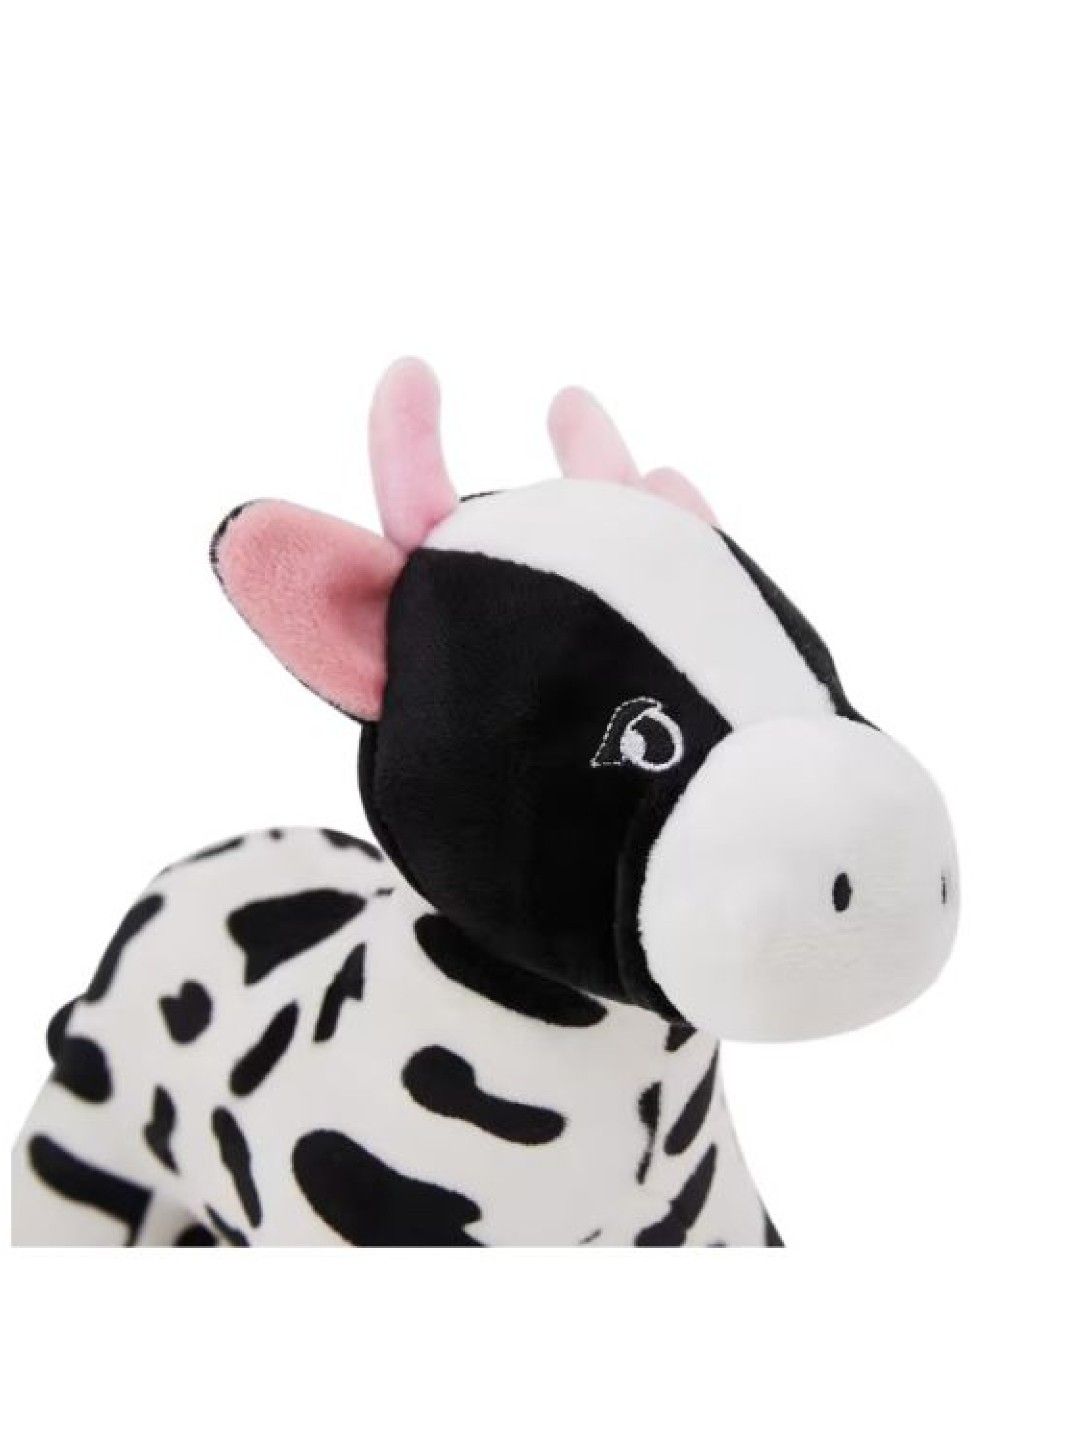 Anko Pet Toy Plush Cow (Black/White- Image 4)